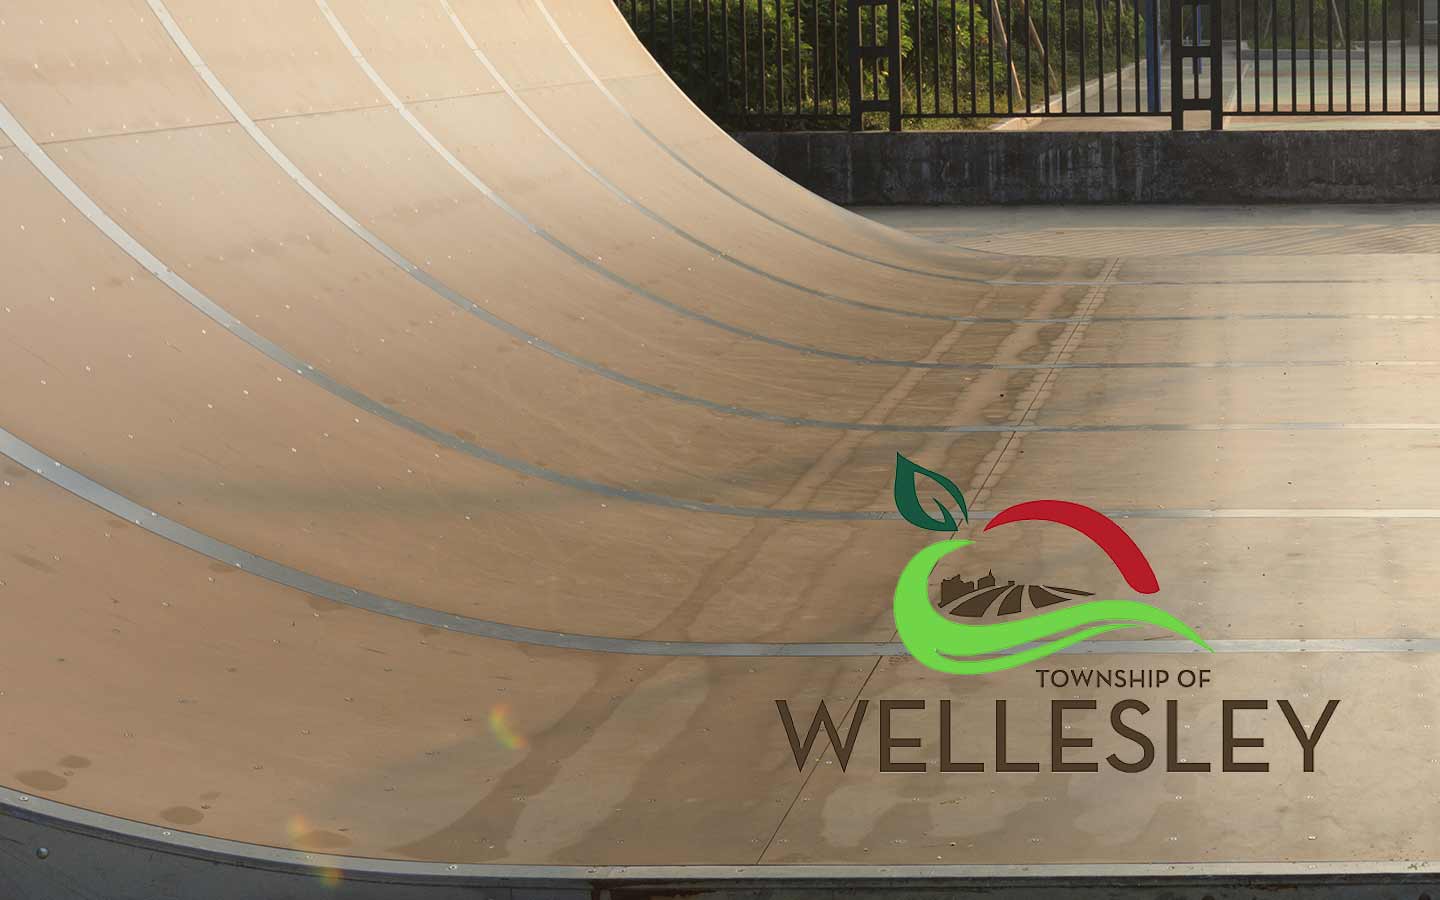                      Safety concerns prompt Wellesley to close village skate park                             
                     